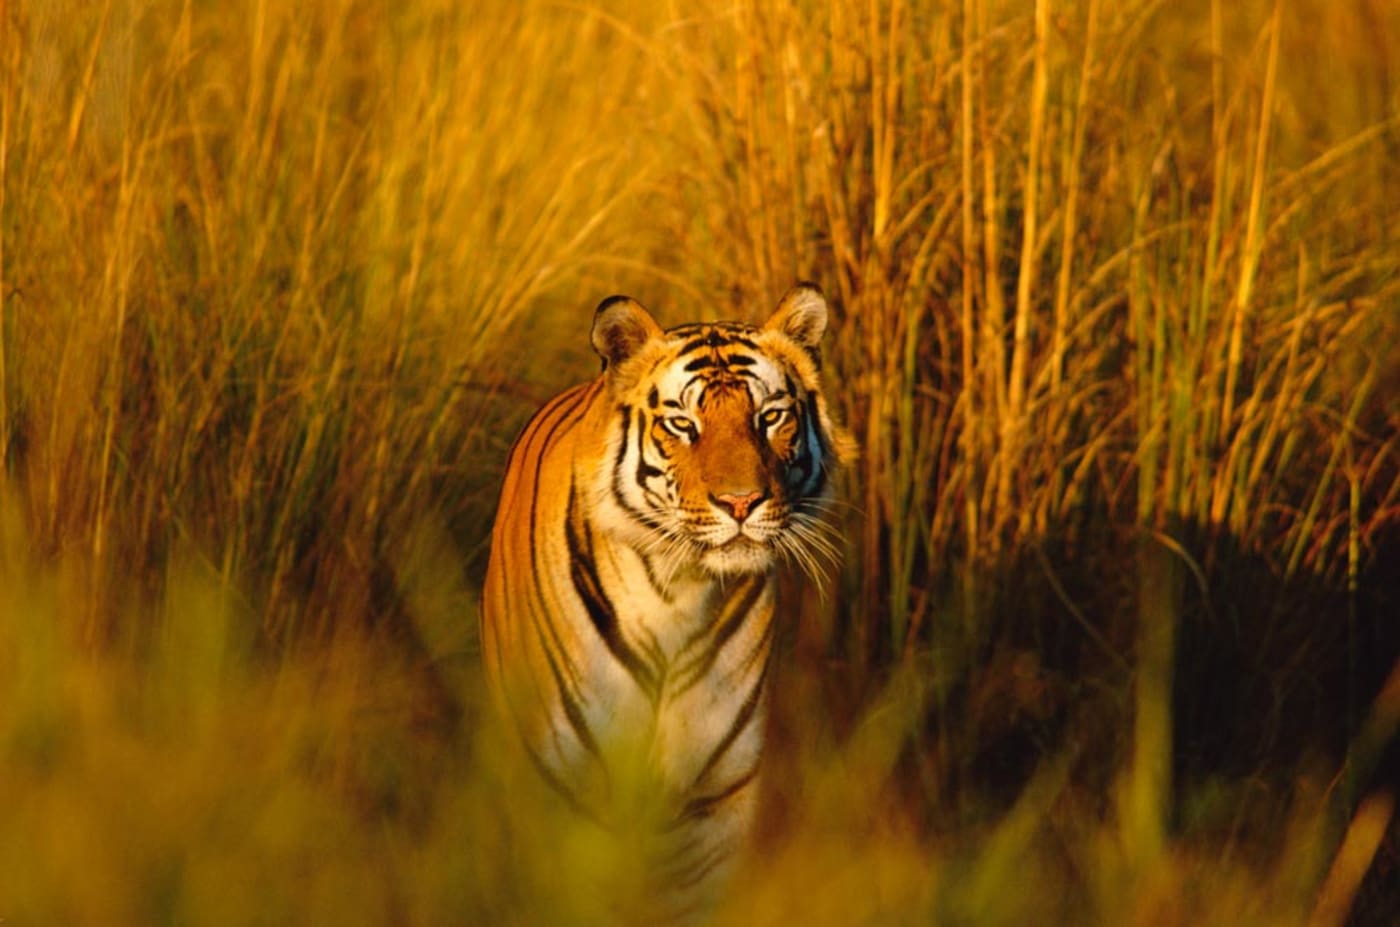 A tiger walks through long grass